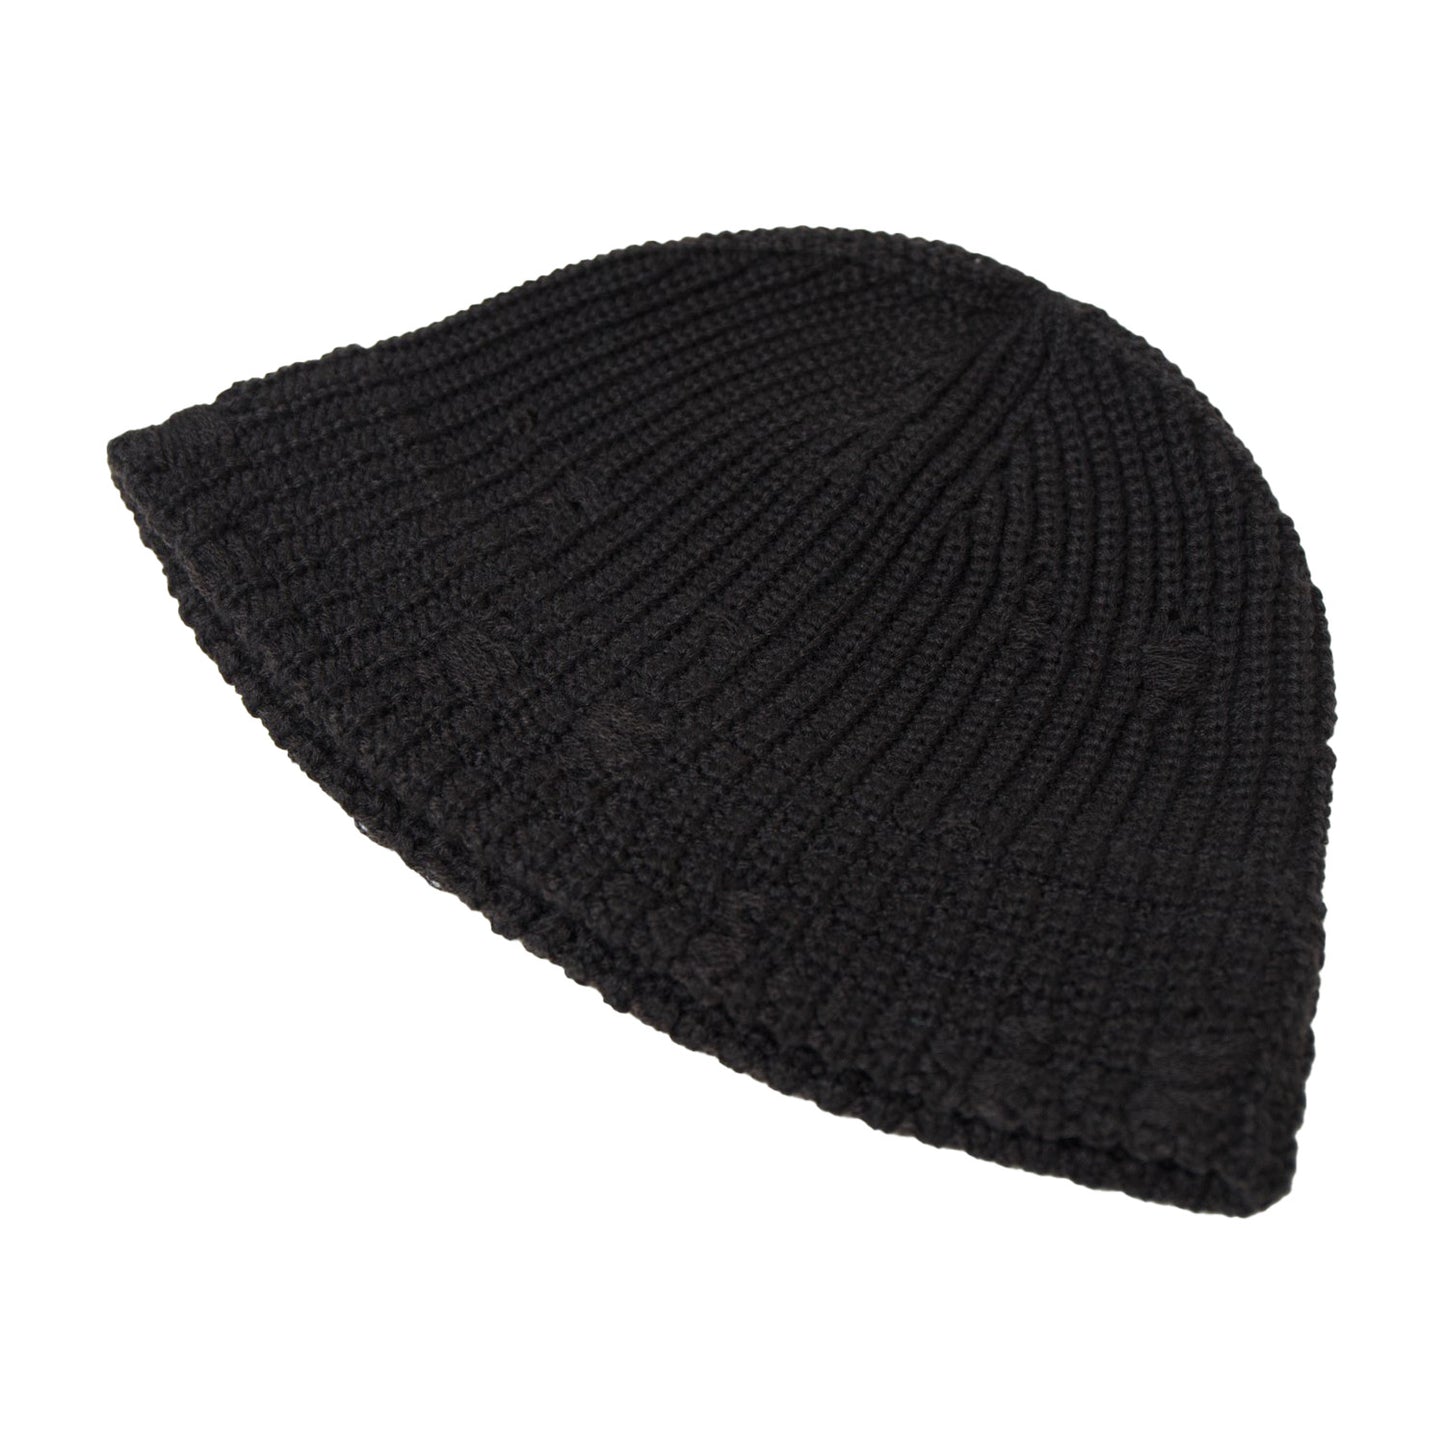 Damage Knit Hat, Black